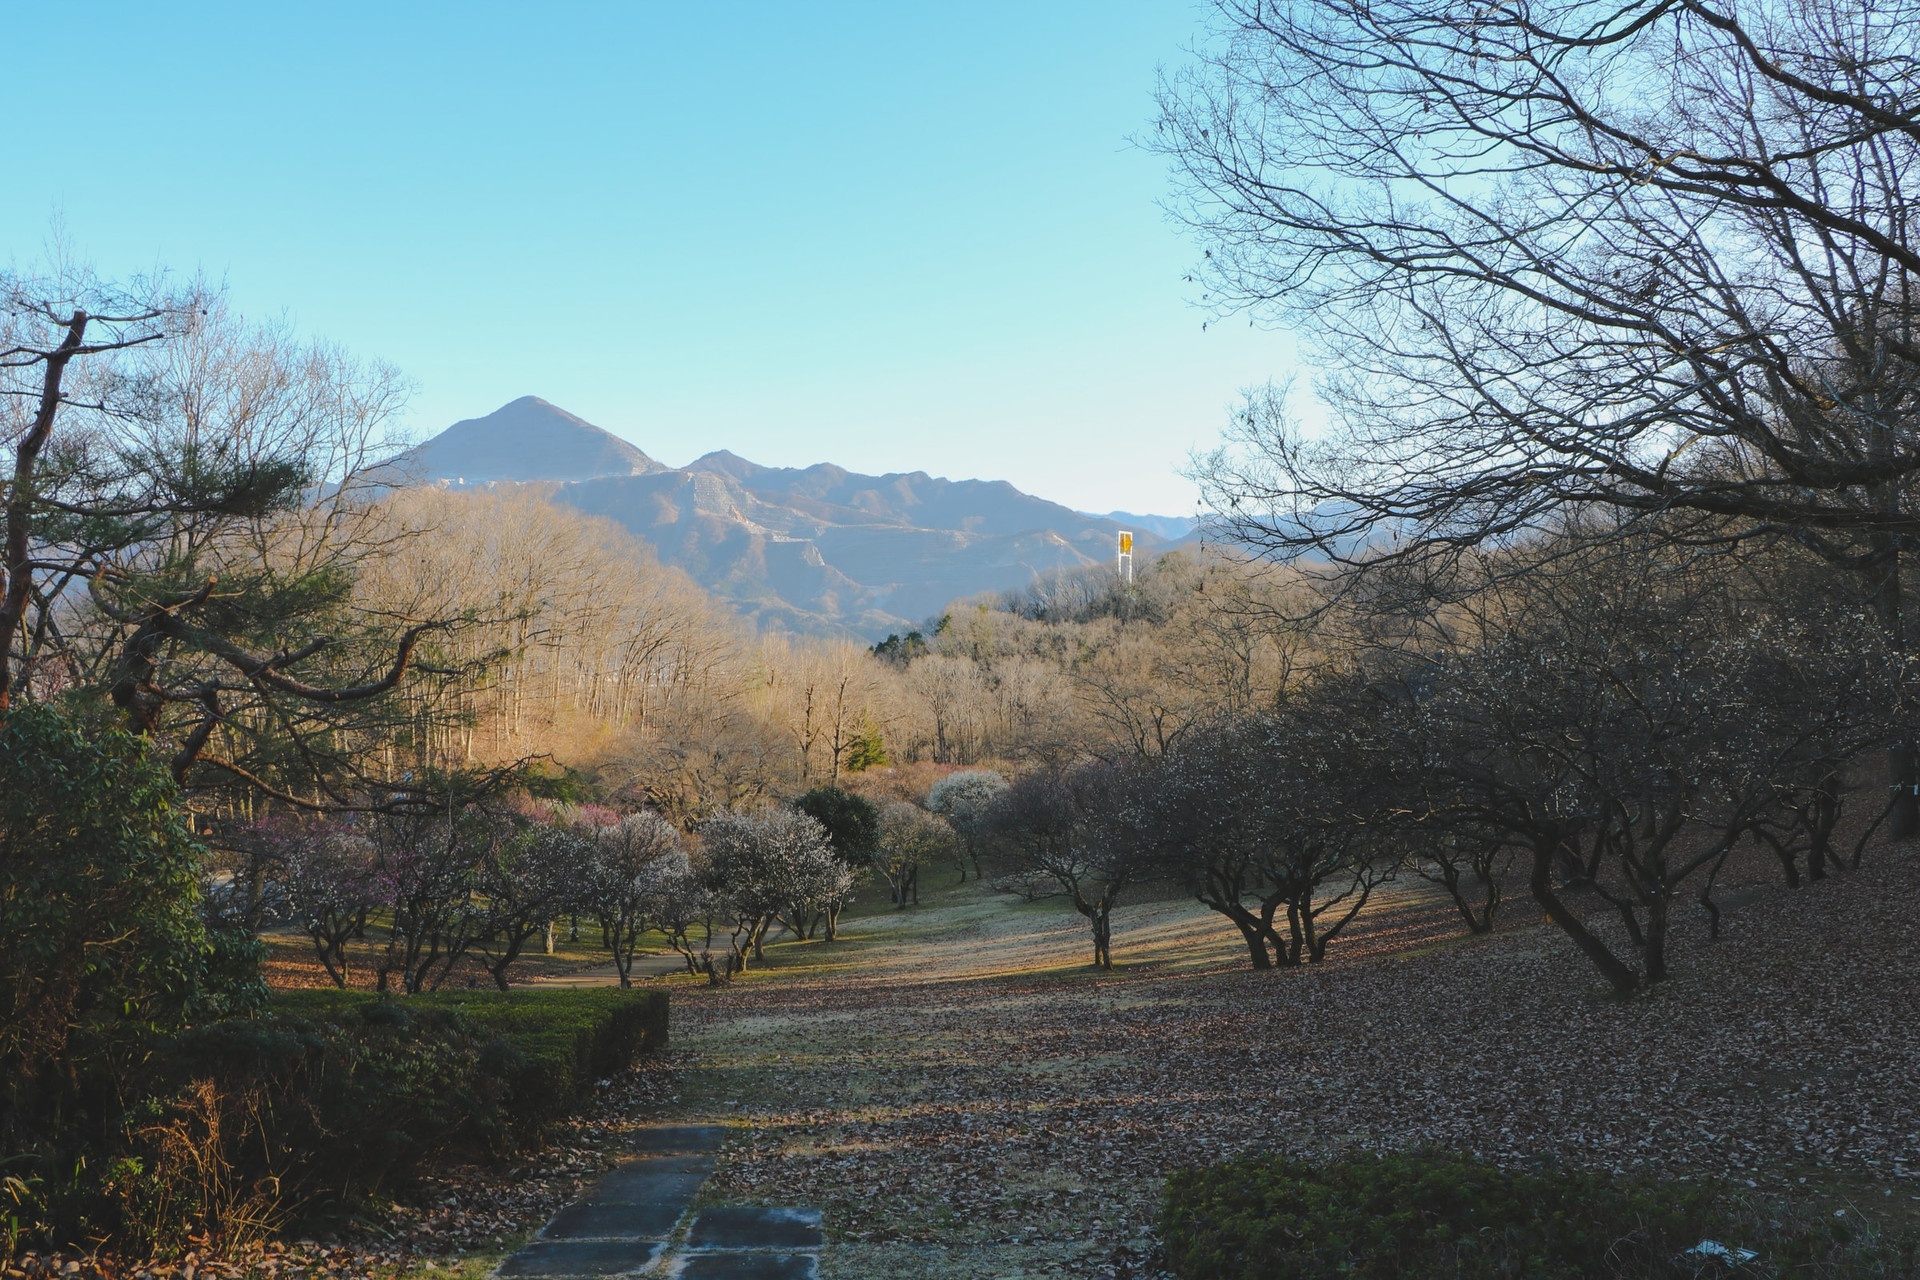  Thiên nhiên yên bình vùng núi Chichibu, Saitama, Nhật Bản. Ảnh: Unsplash.